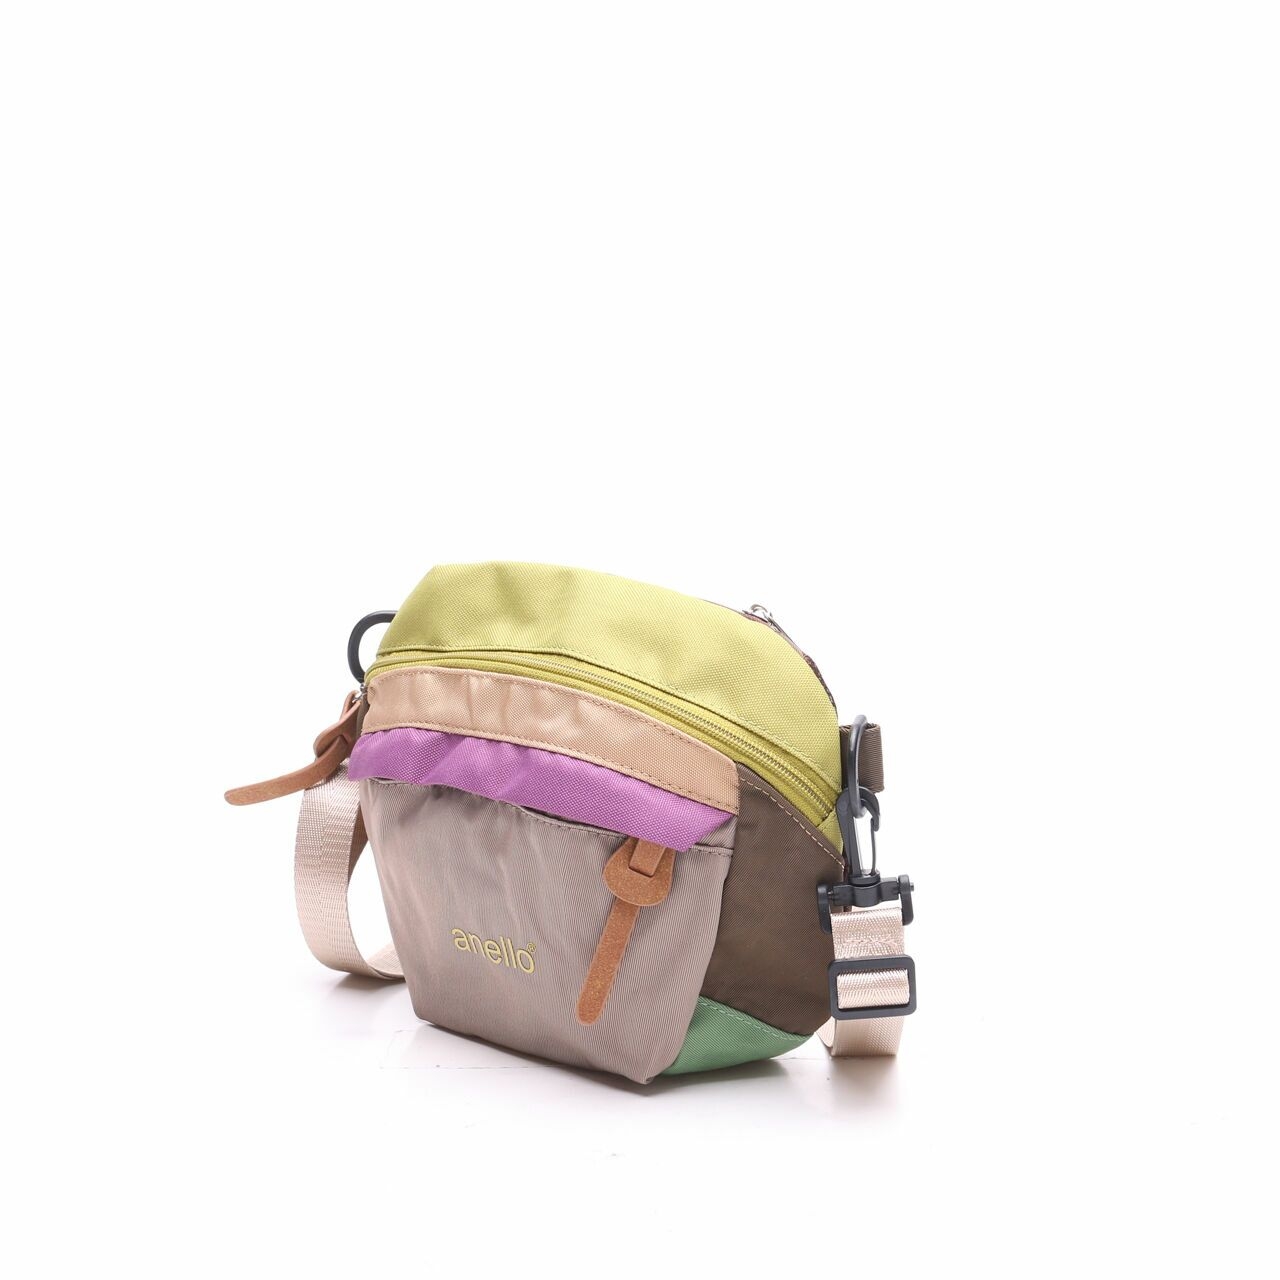 Anello Multicolor Sling Bag